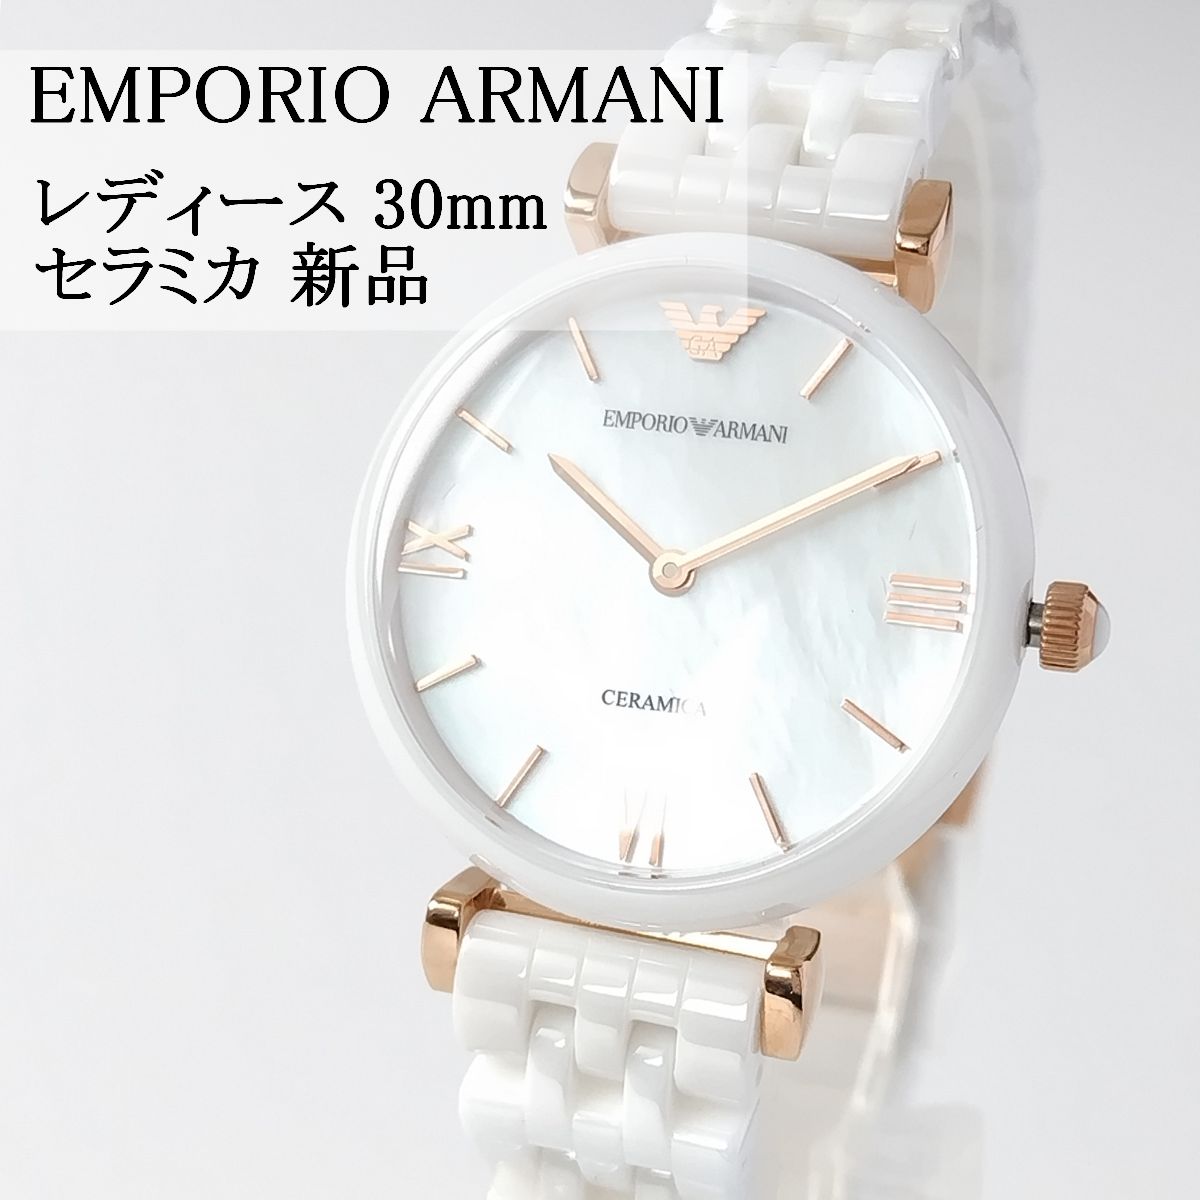 ホワイトセラミック新品レディース腕時計エンポリオ・アルマーニ30mm白 